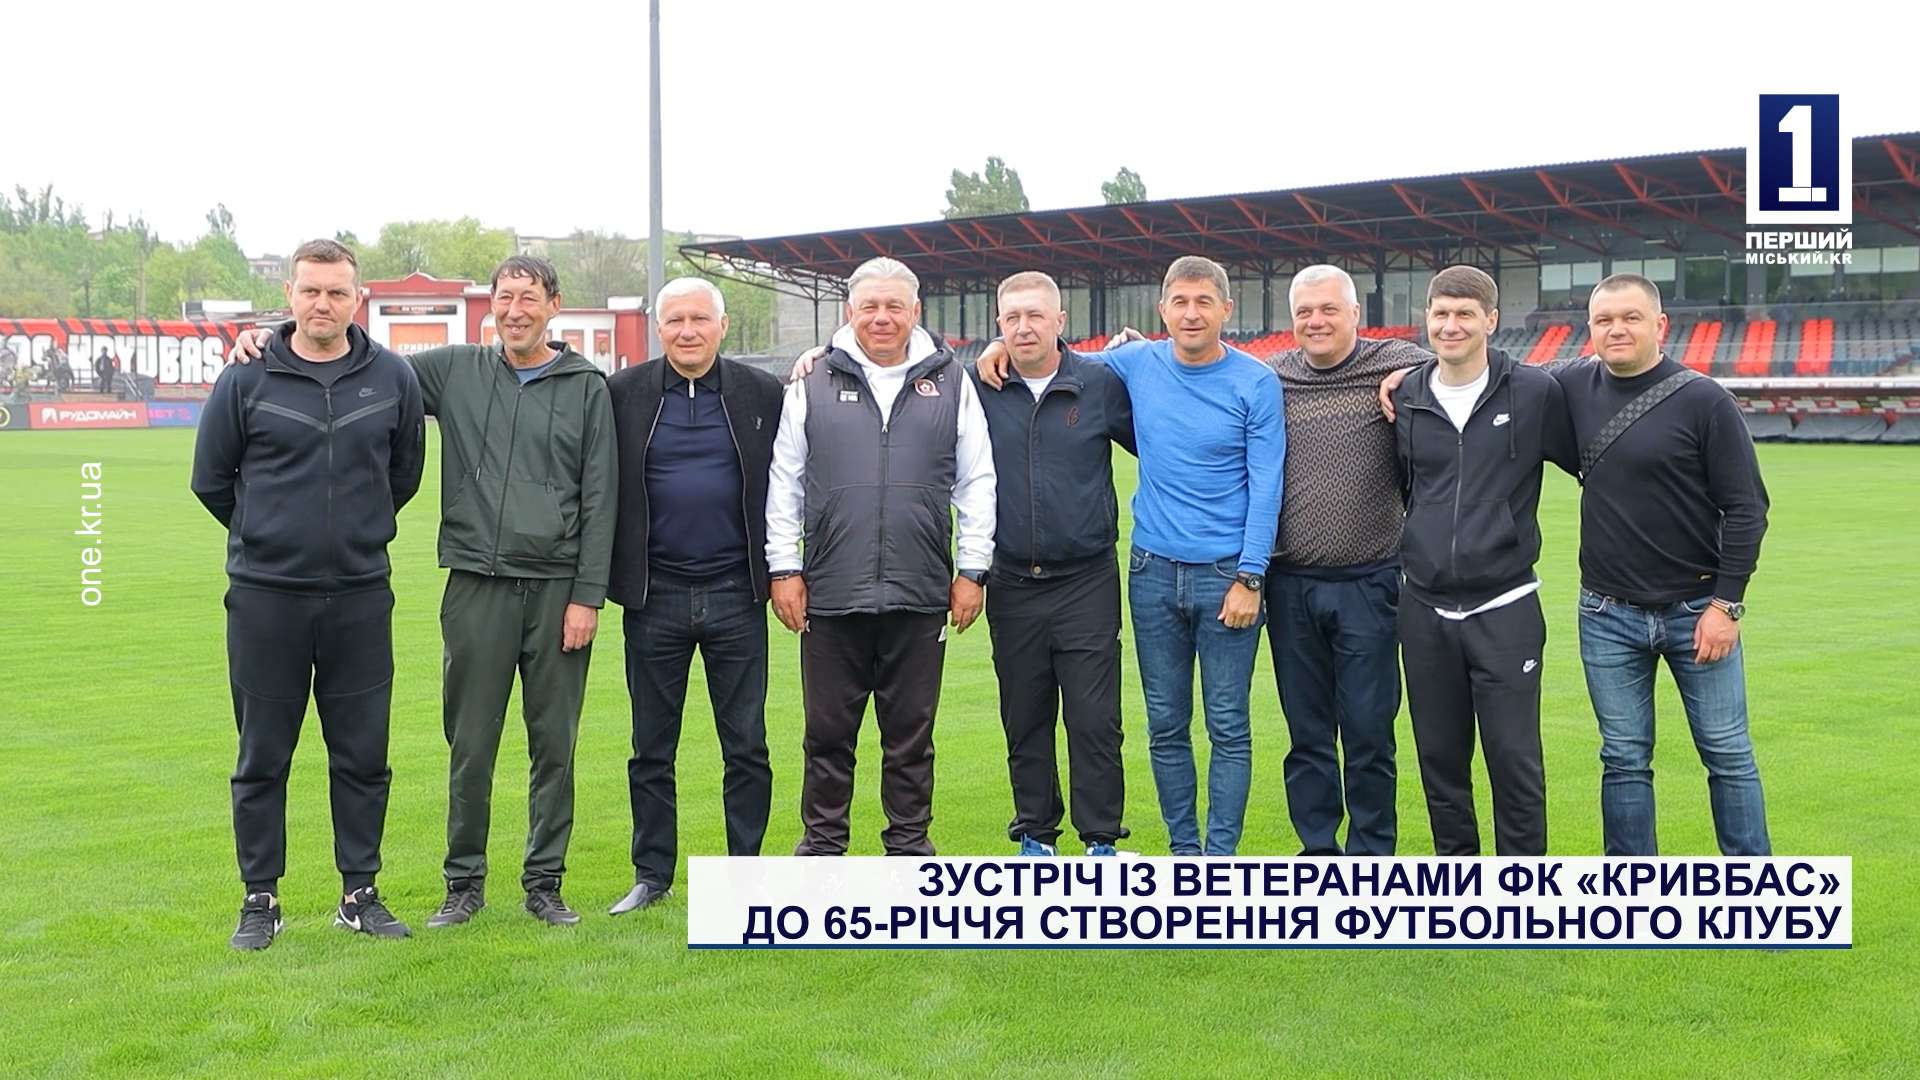 Встреча с ветеранами ФК «Кривбасс» к 65-летию создания футбольного клуба